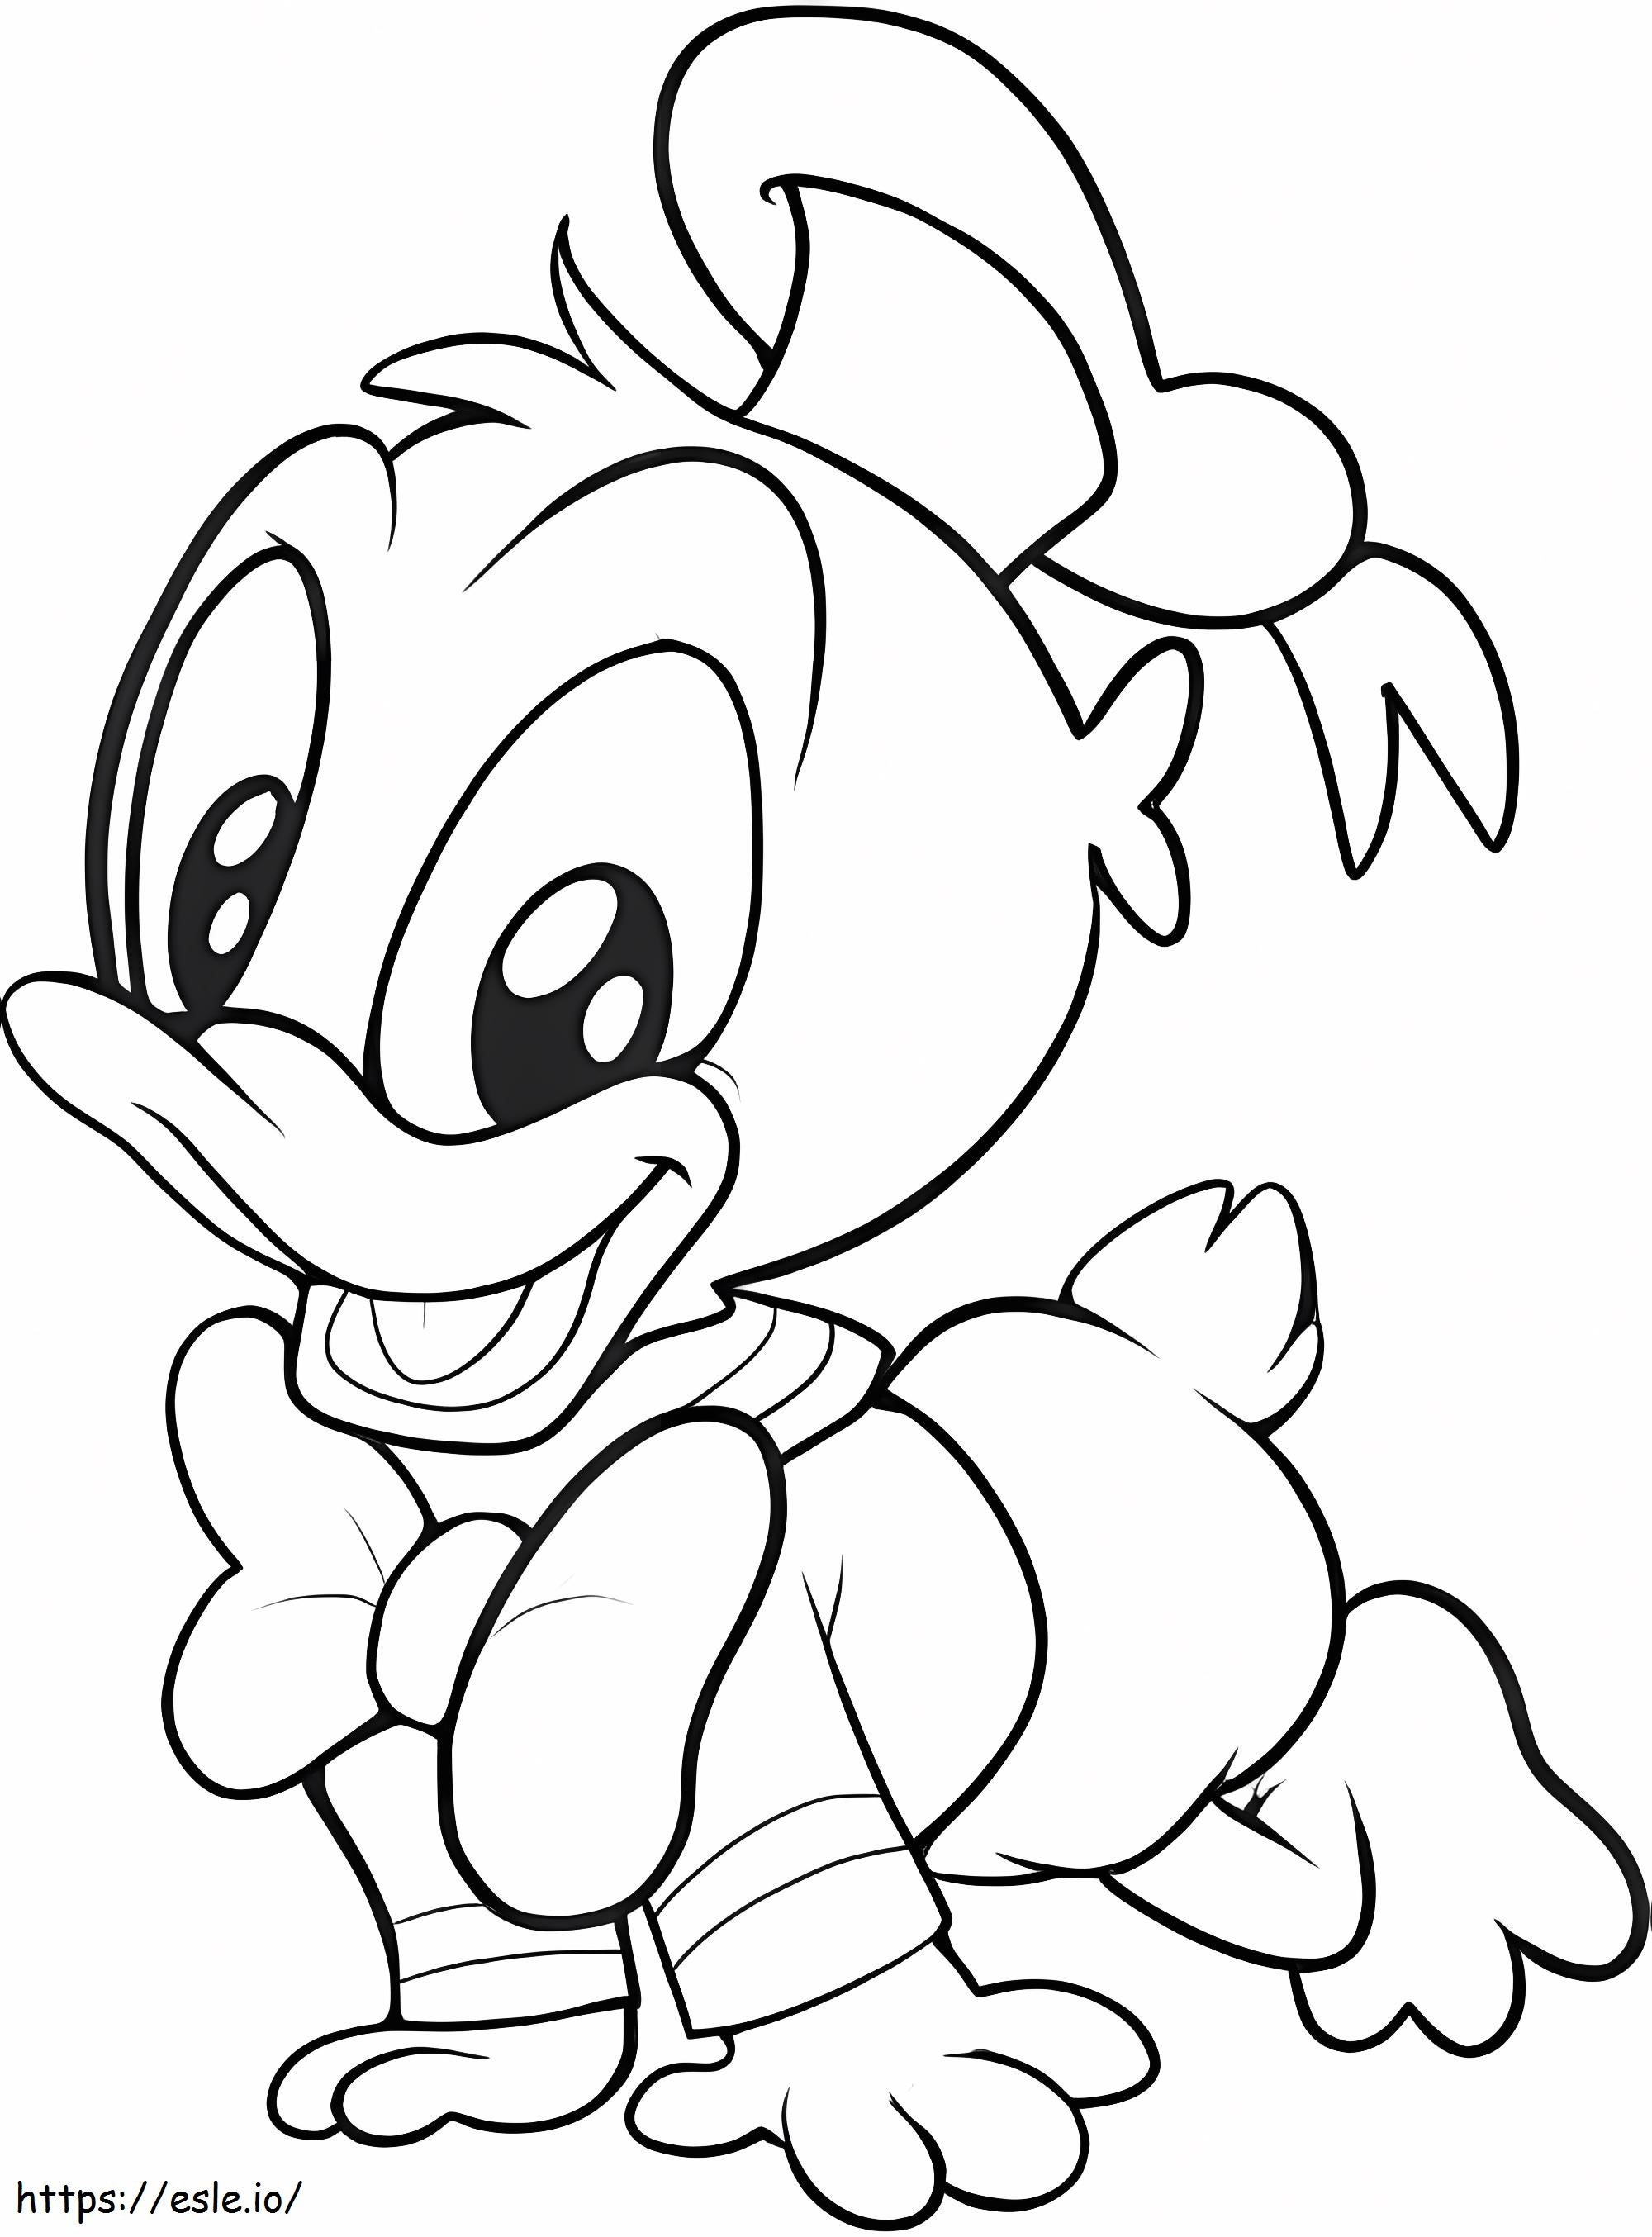 Coloriage Adorable bébé Disney Donald à imprimer dessin